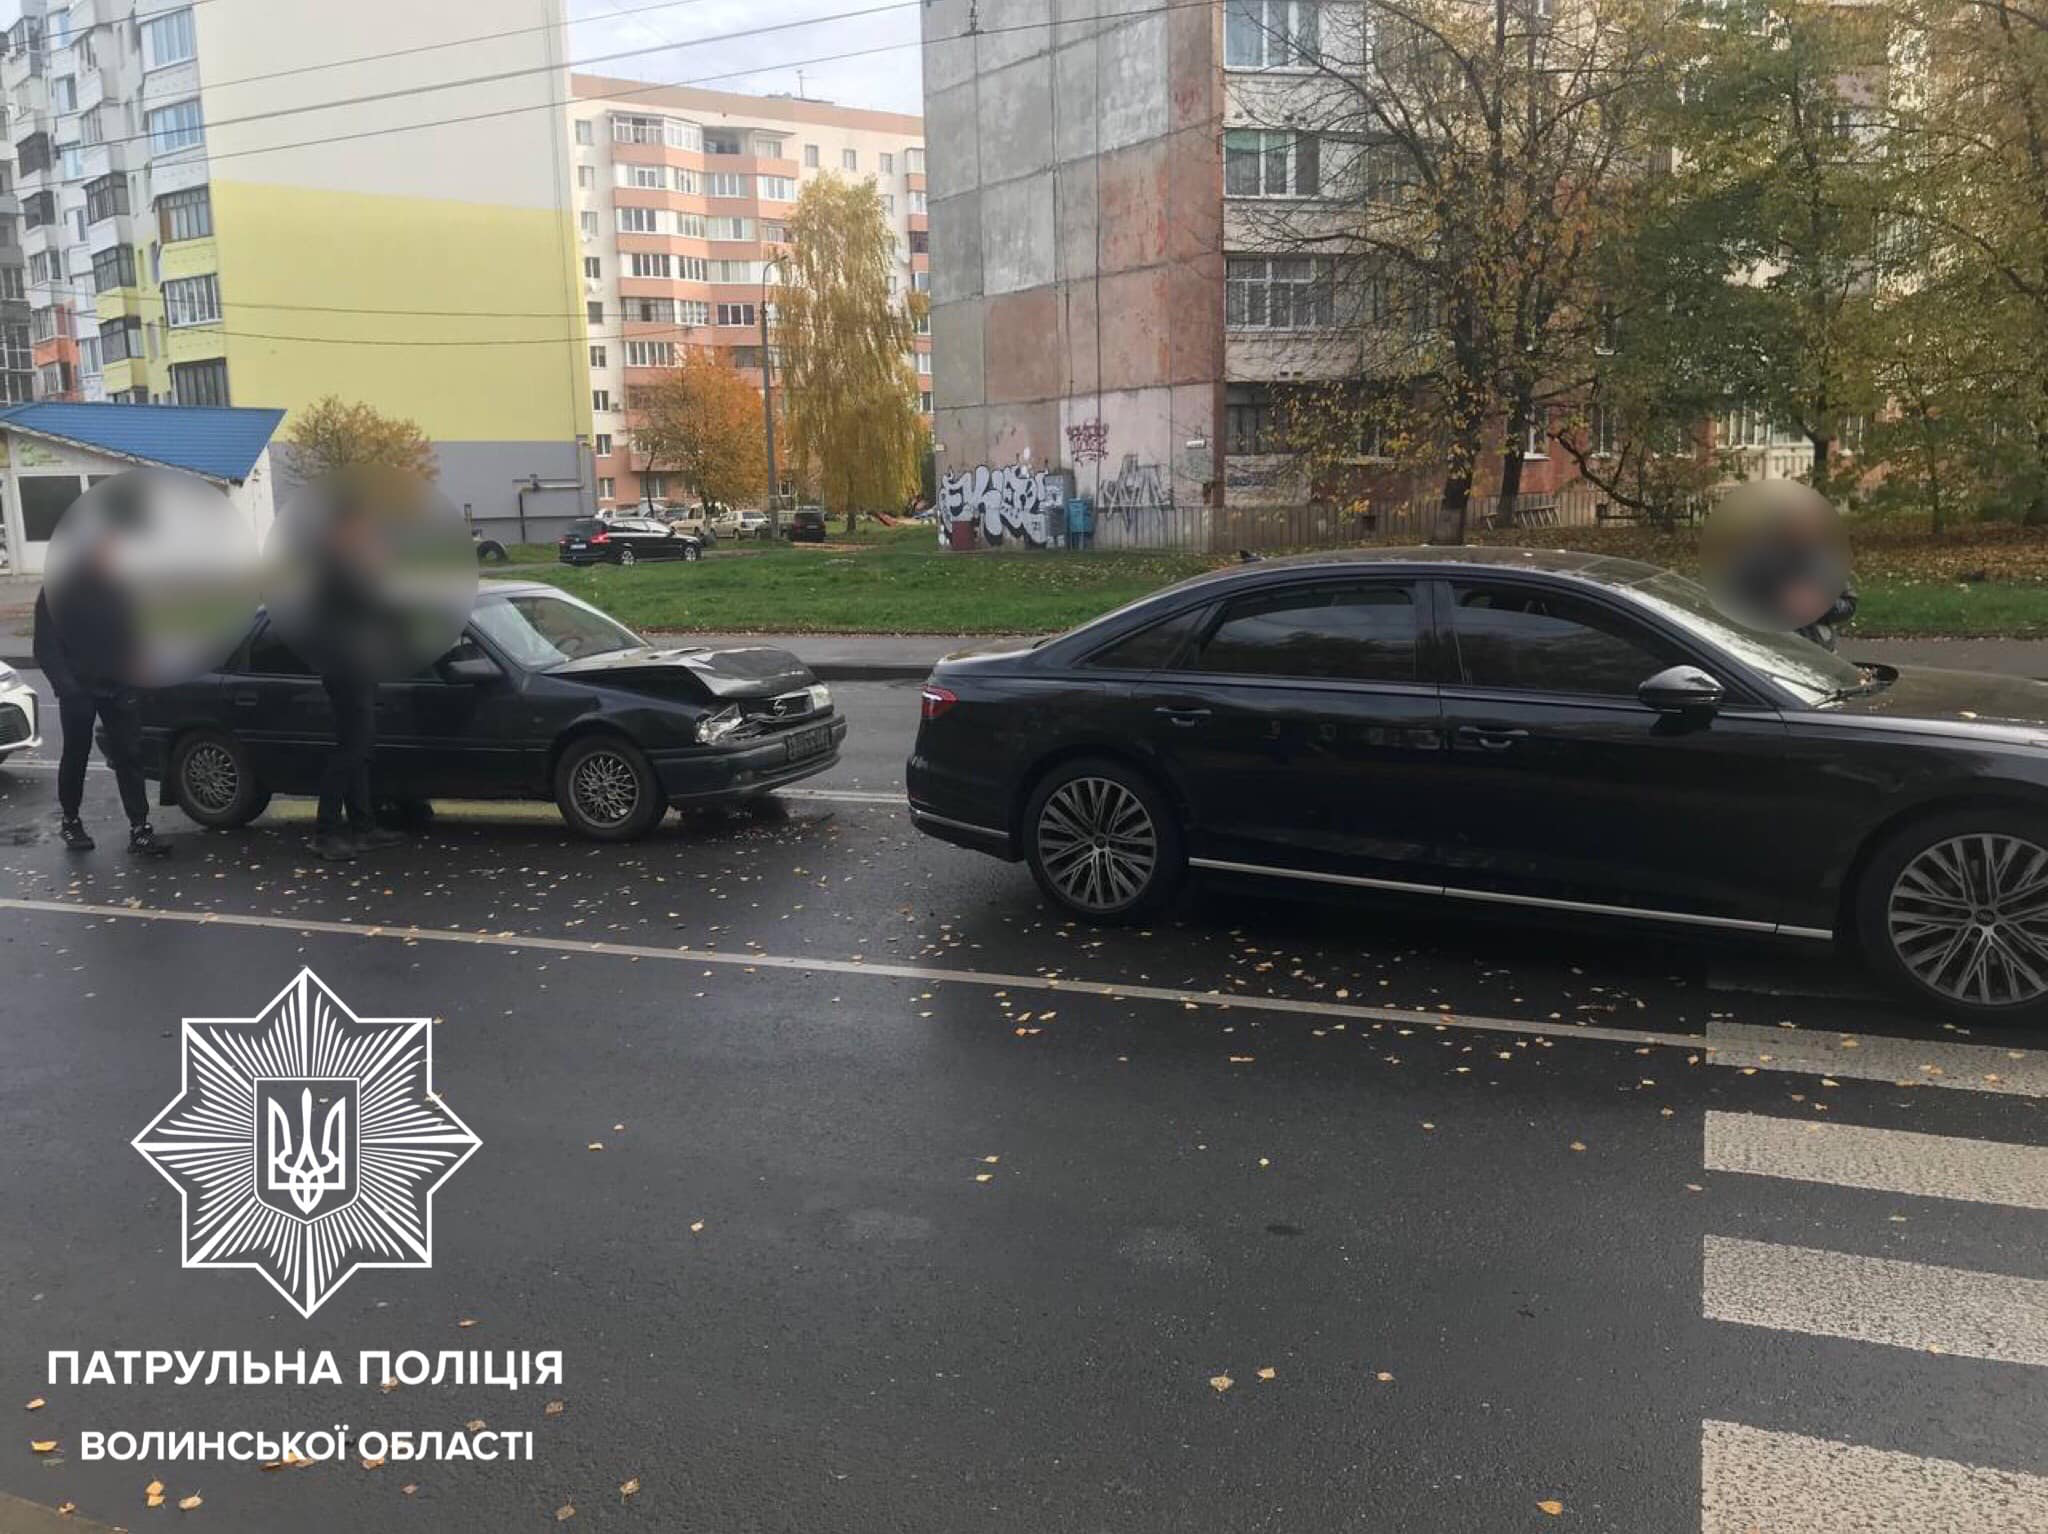 «Підкачав» окомір: деталі аварії  в Луцьку на Конякіна (фото)